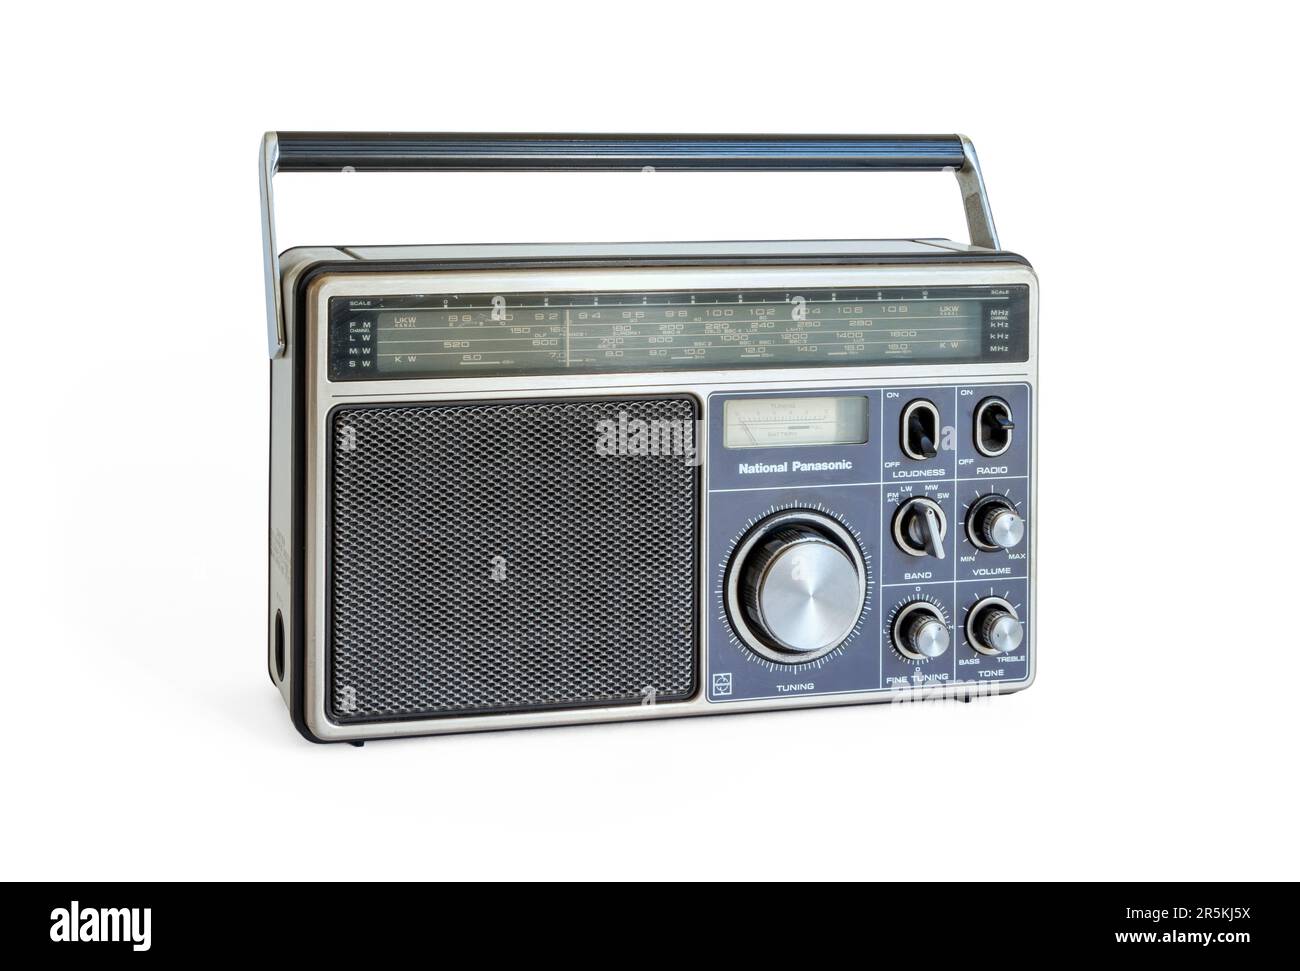 Radio à transistor RF-1110 LBS National Panasonic de 1978, isolée sur fond blanc Banque D'Images